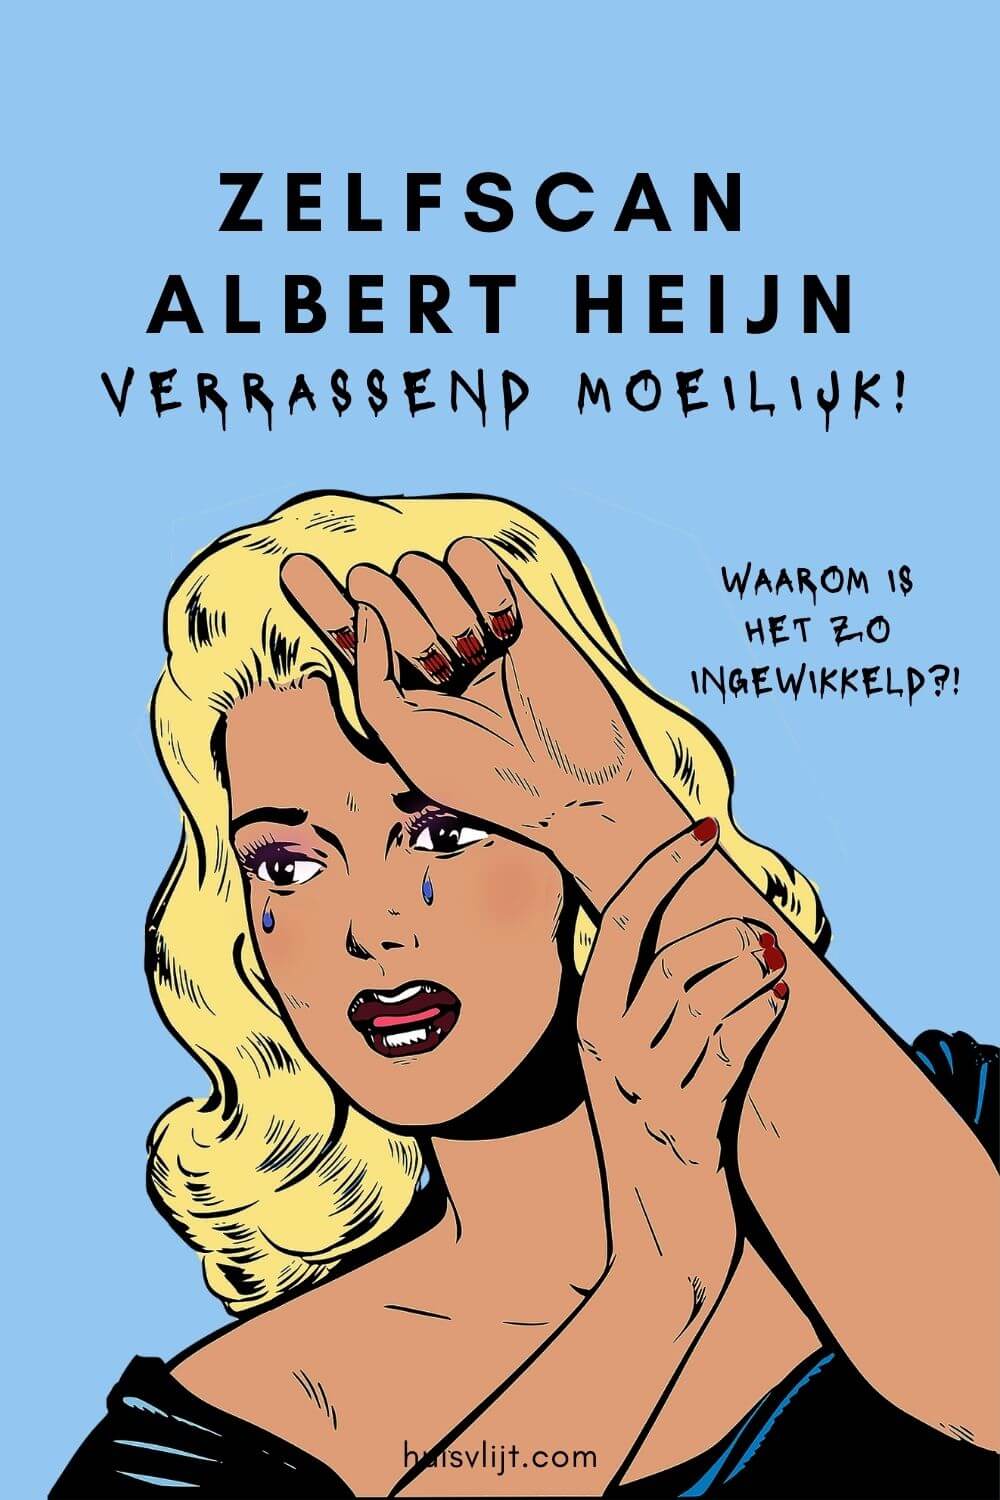 Zelfscan Albert Heijn: een heel gedoe zeg!